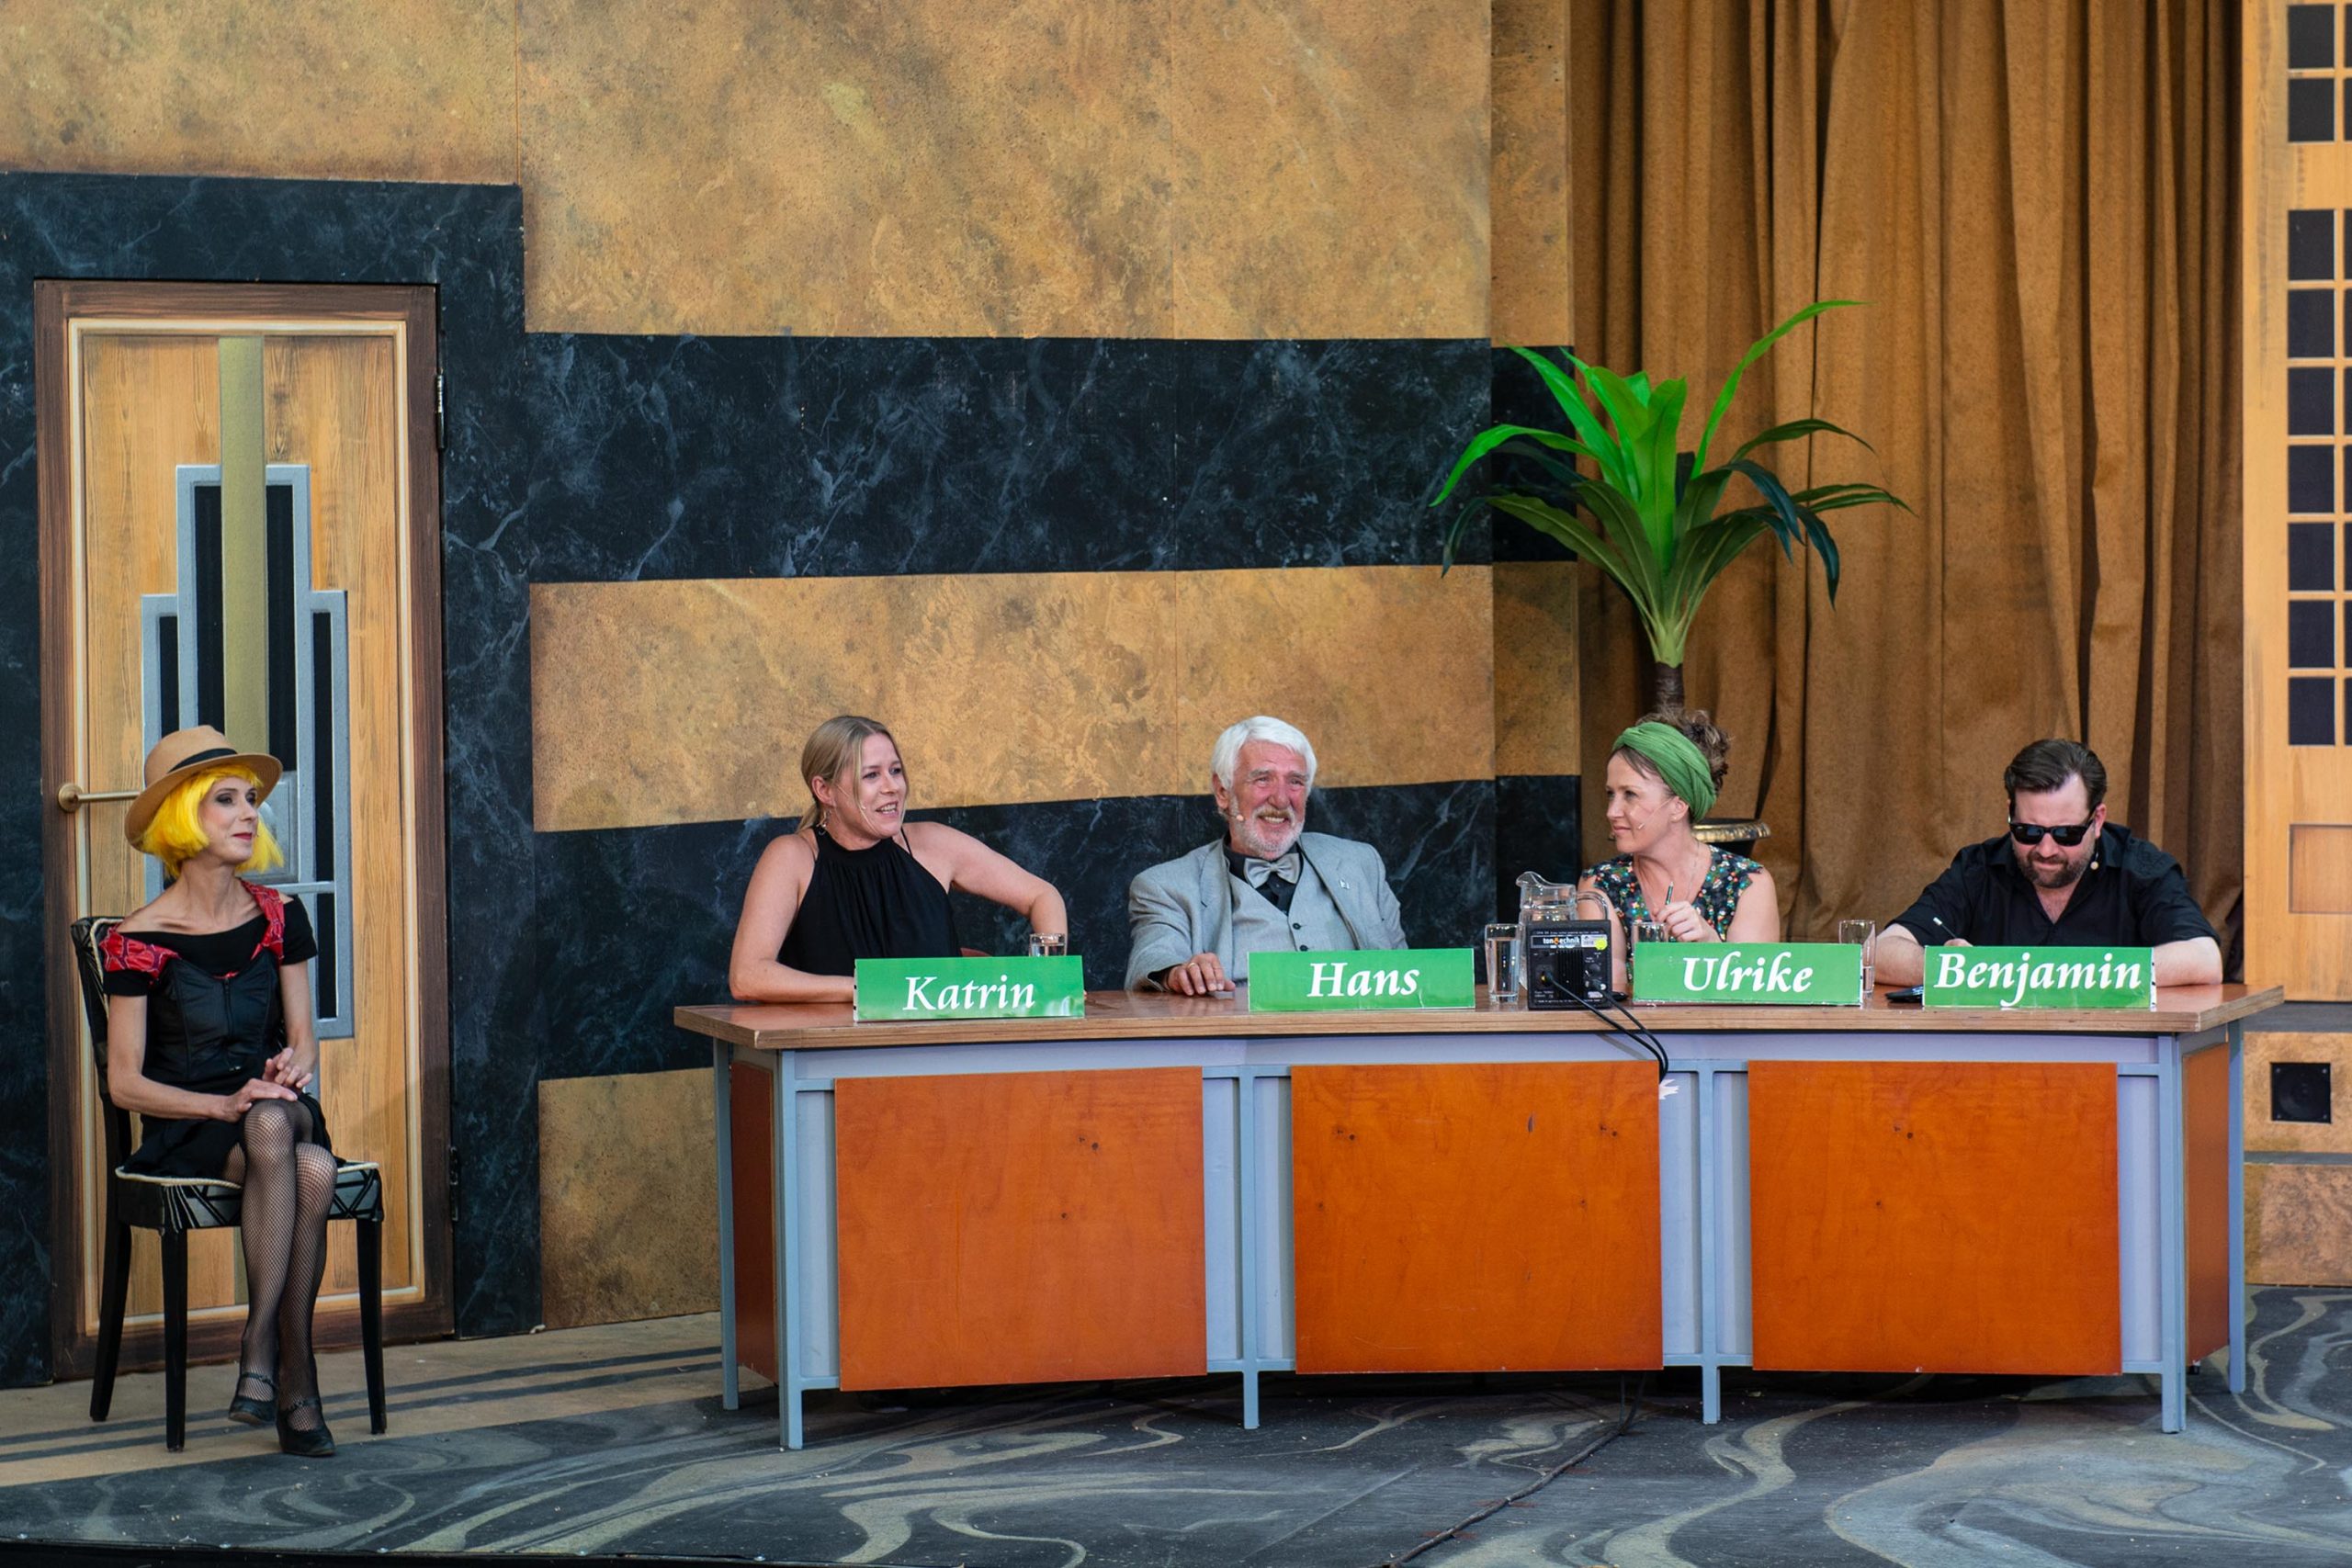 Das Rateteam mit Katrin, Hans, Ulrike und Benjamin in heiterer Stimmung sitzend an seinem Tisch.